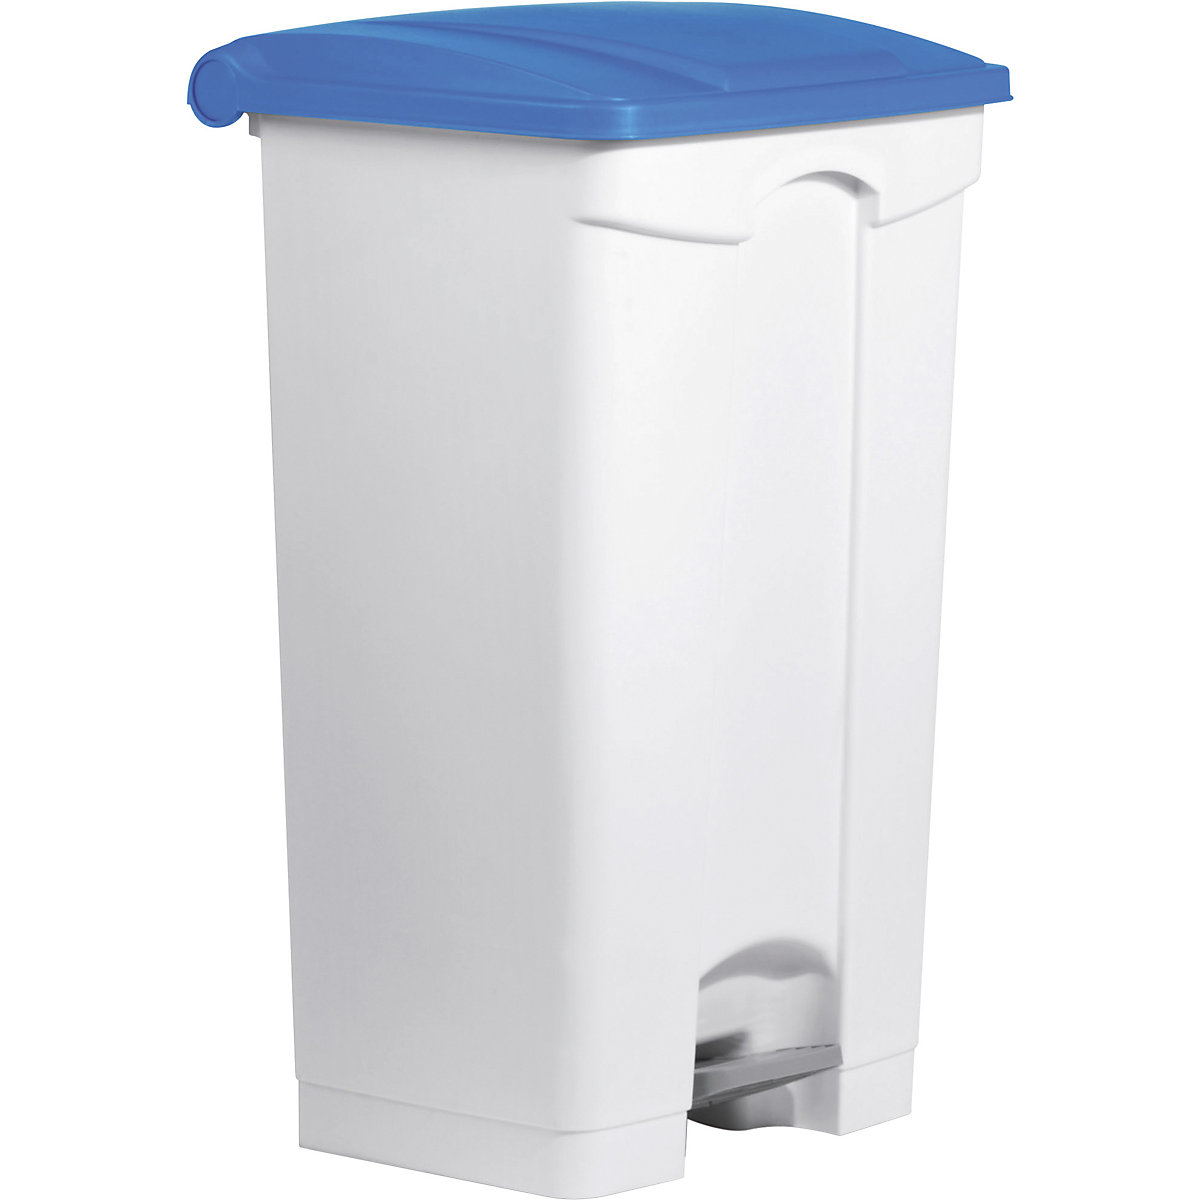 Nášlapná nádoba na odpad – helit, objem 90 l, š x v x h 500 x 830 x 410 mm, bílá, modré víko-6